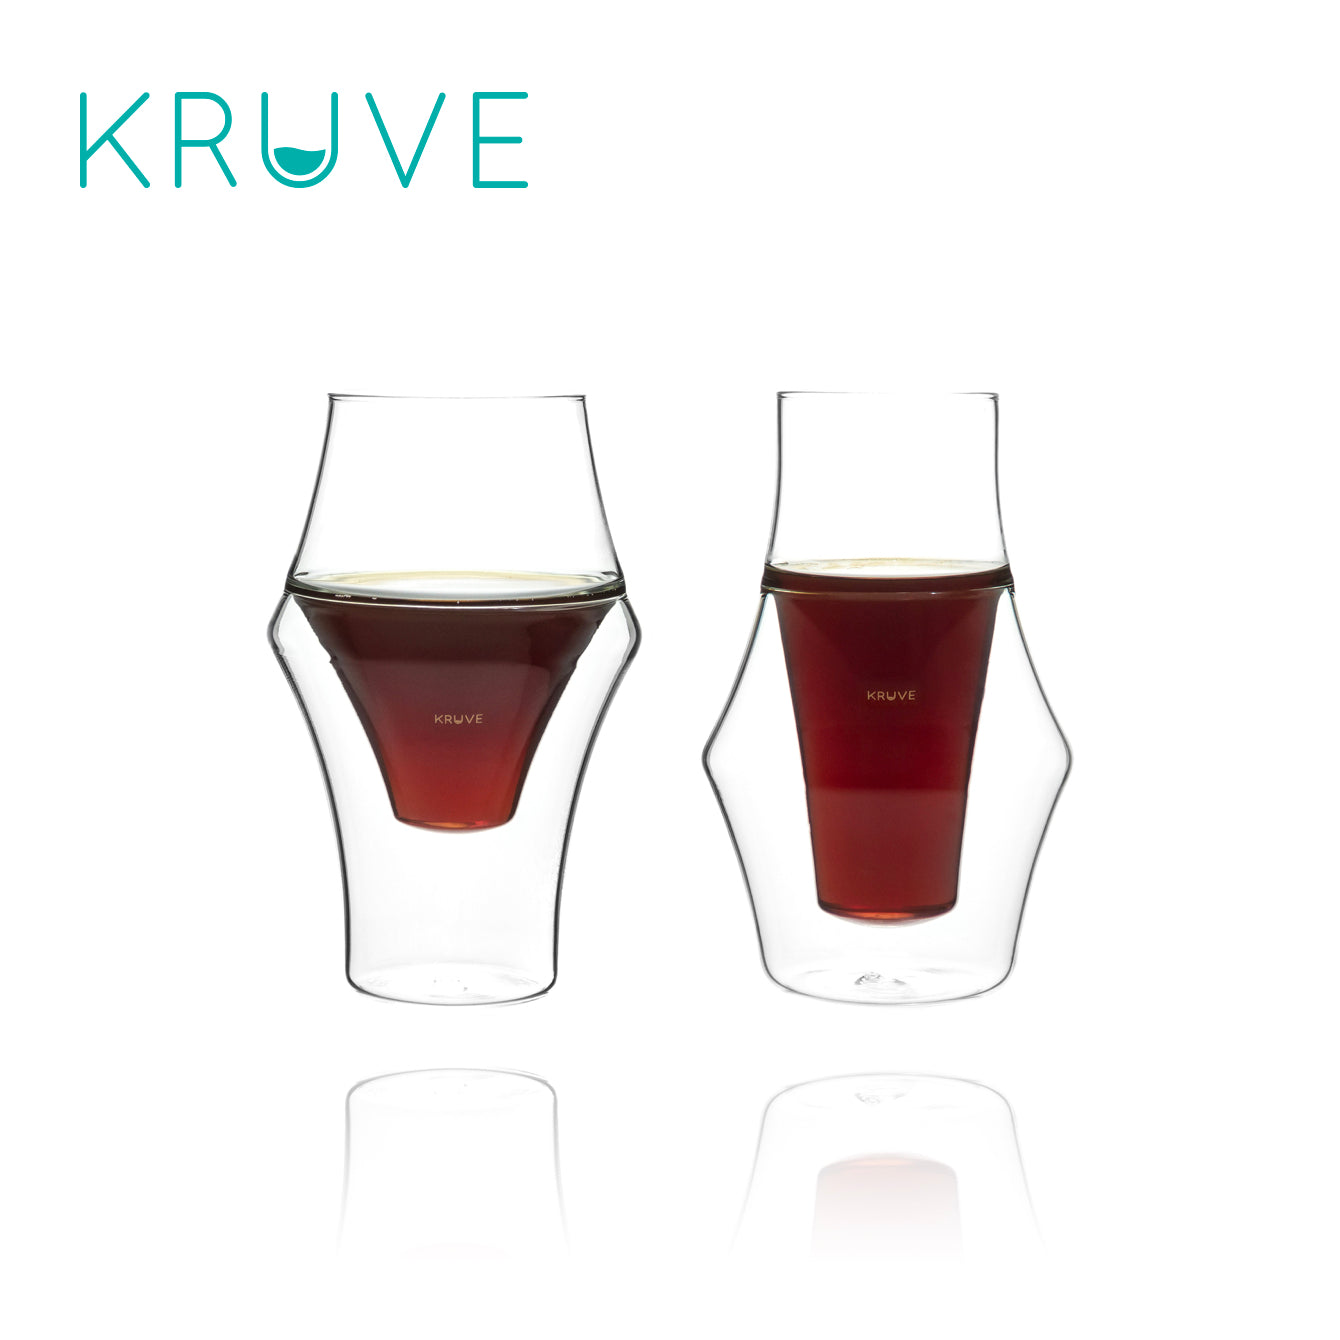 Kruve EQ Glasses Tasting Set